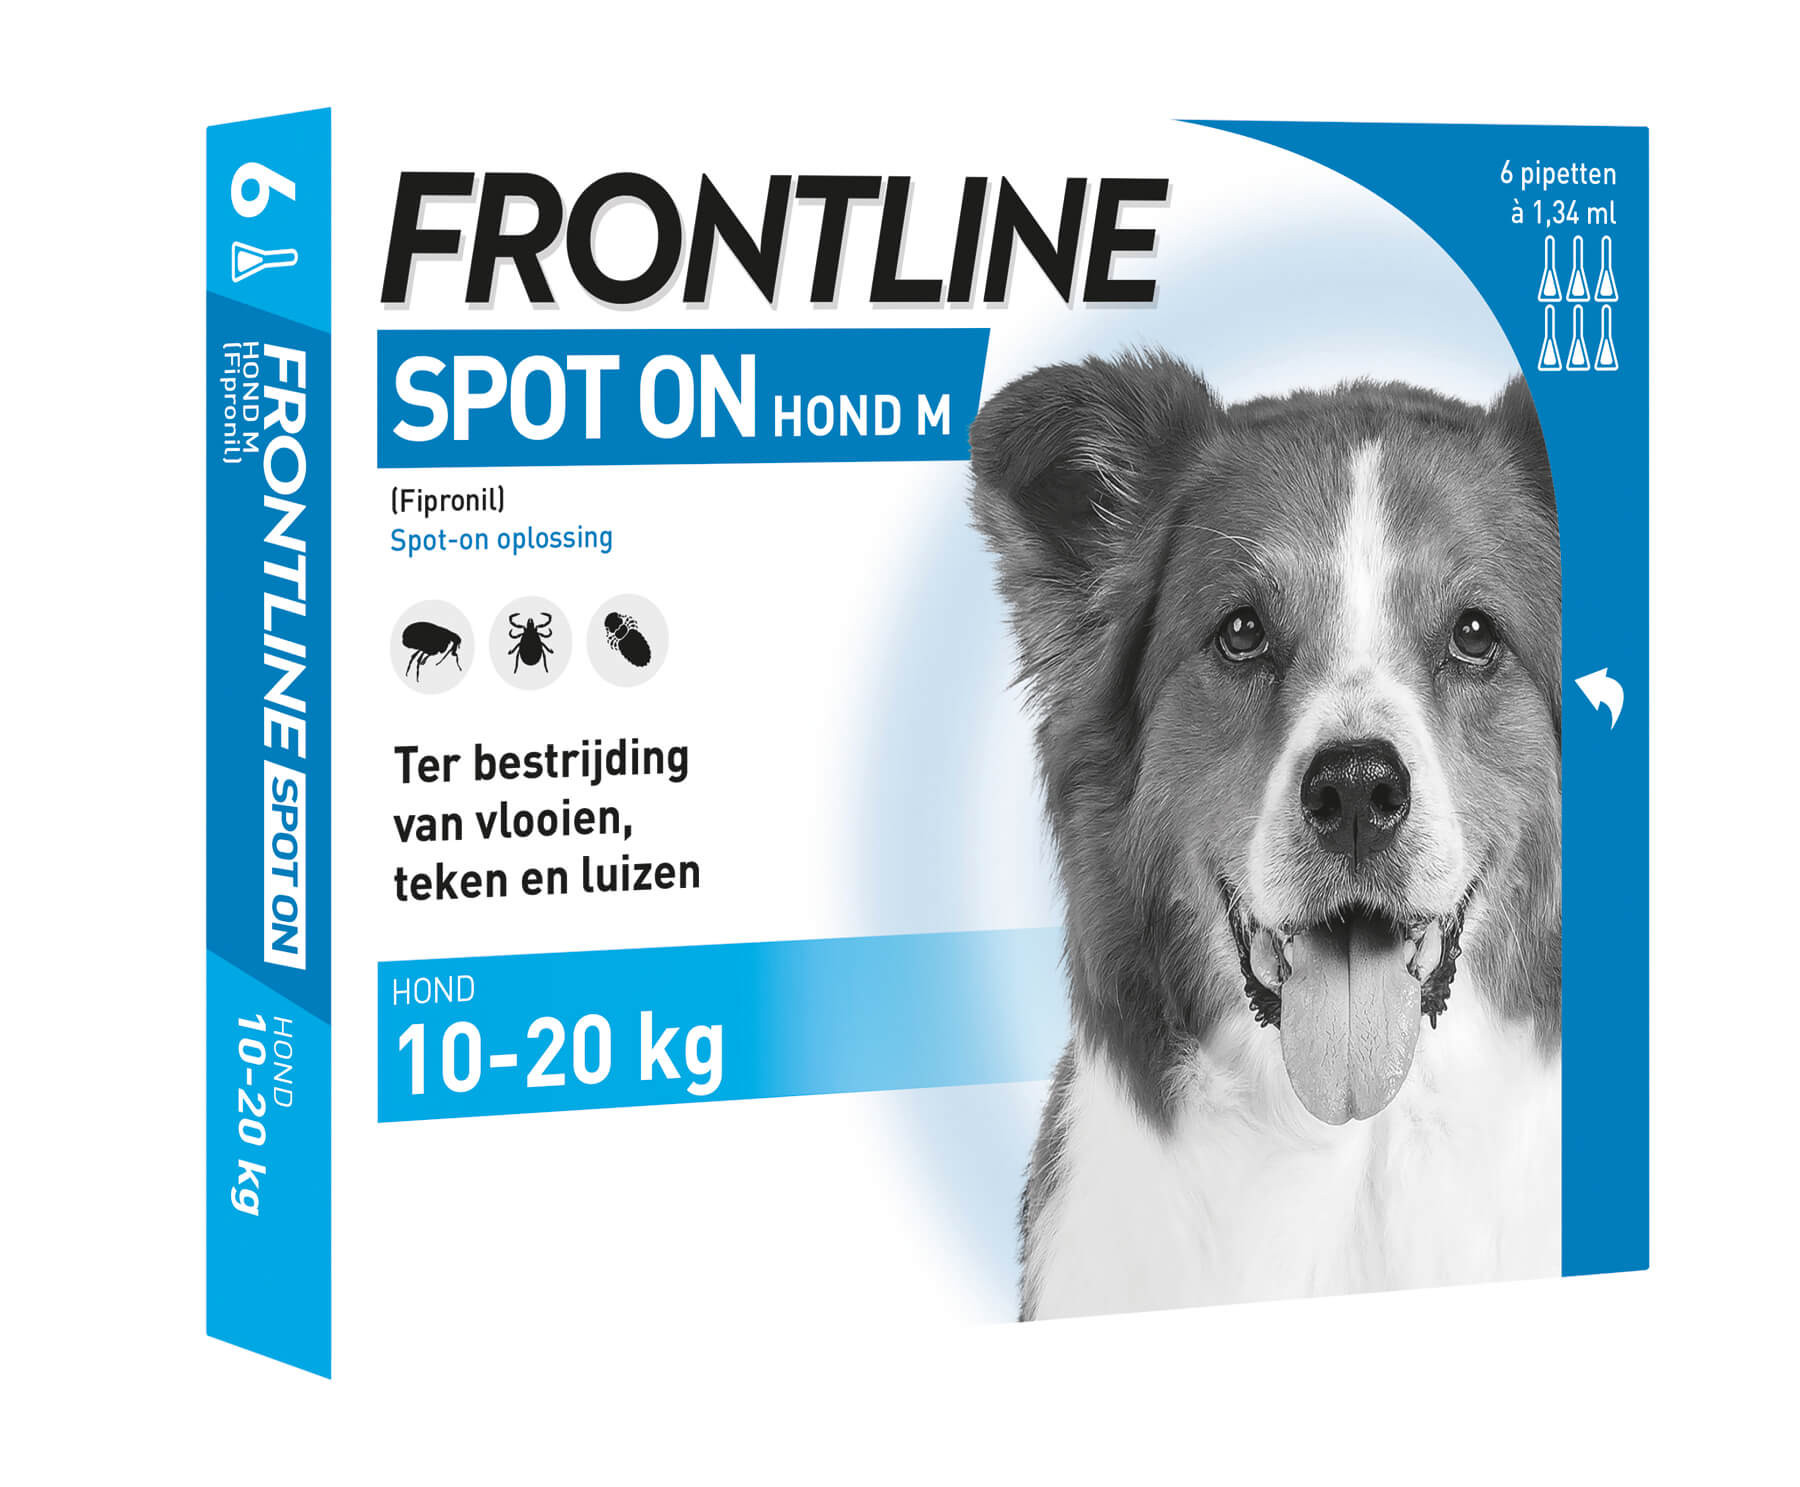 Afbeelding Frontline Spot on Hond M 6 pipetten door Brekz.nl